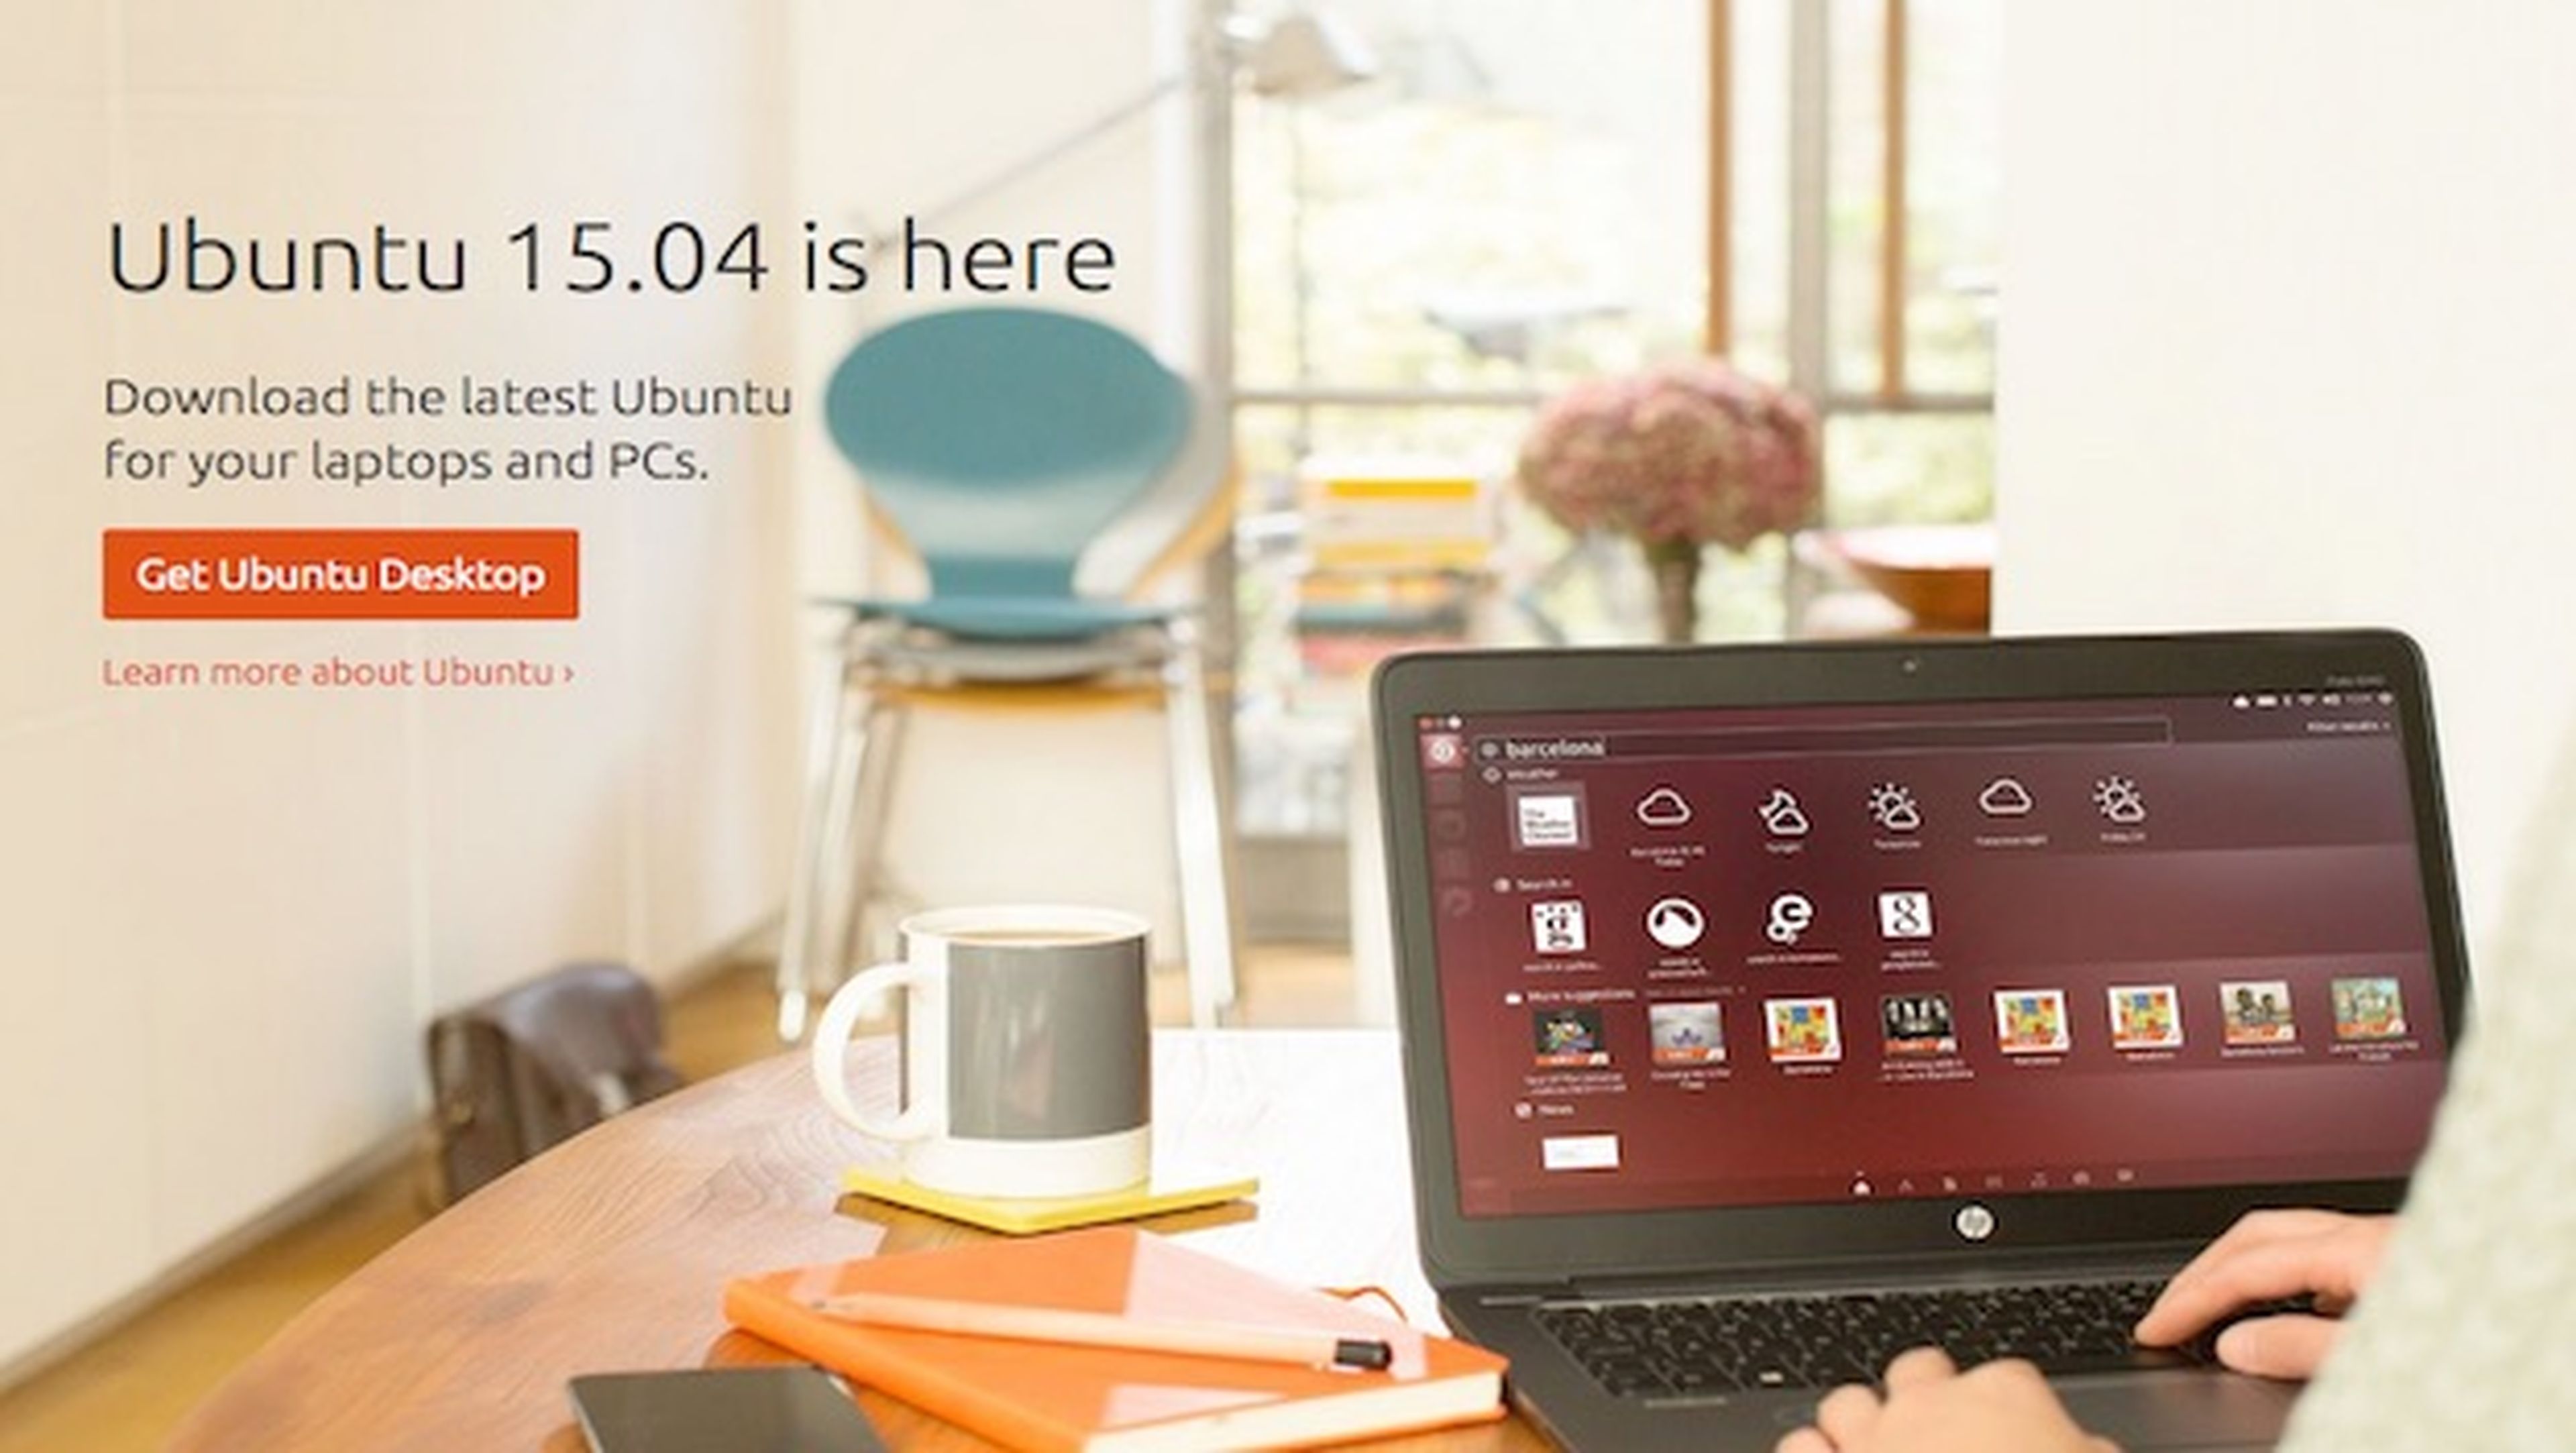 La nueva versión de Ubuntu ,la 15.04, ya se puede descargar